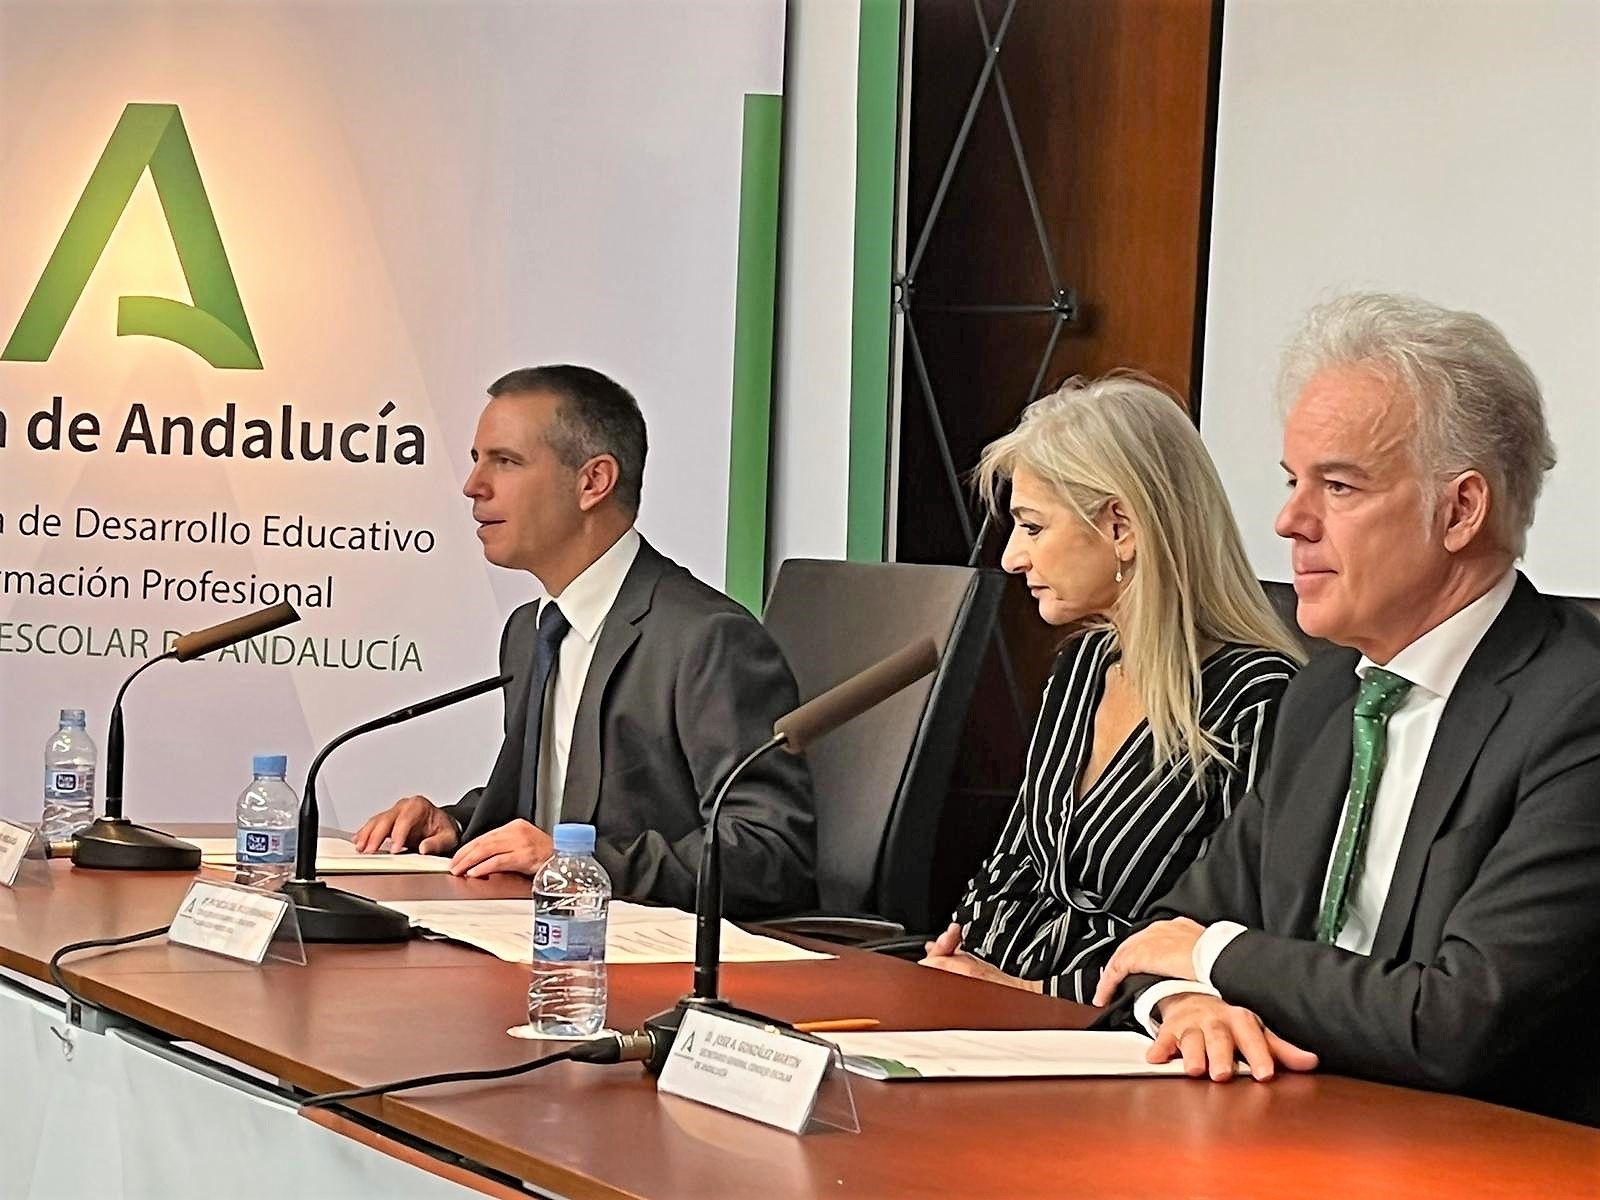 Toma de posesión de Manuel Pérez (a la izquierda, en la imagen) como presidente del Consejo Escolar andaluz, junto a la consejera de Desarrollo Educativo Patricia del Pozo.